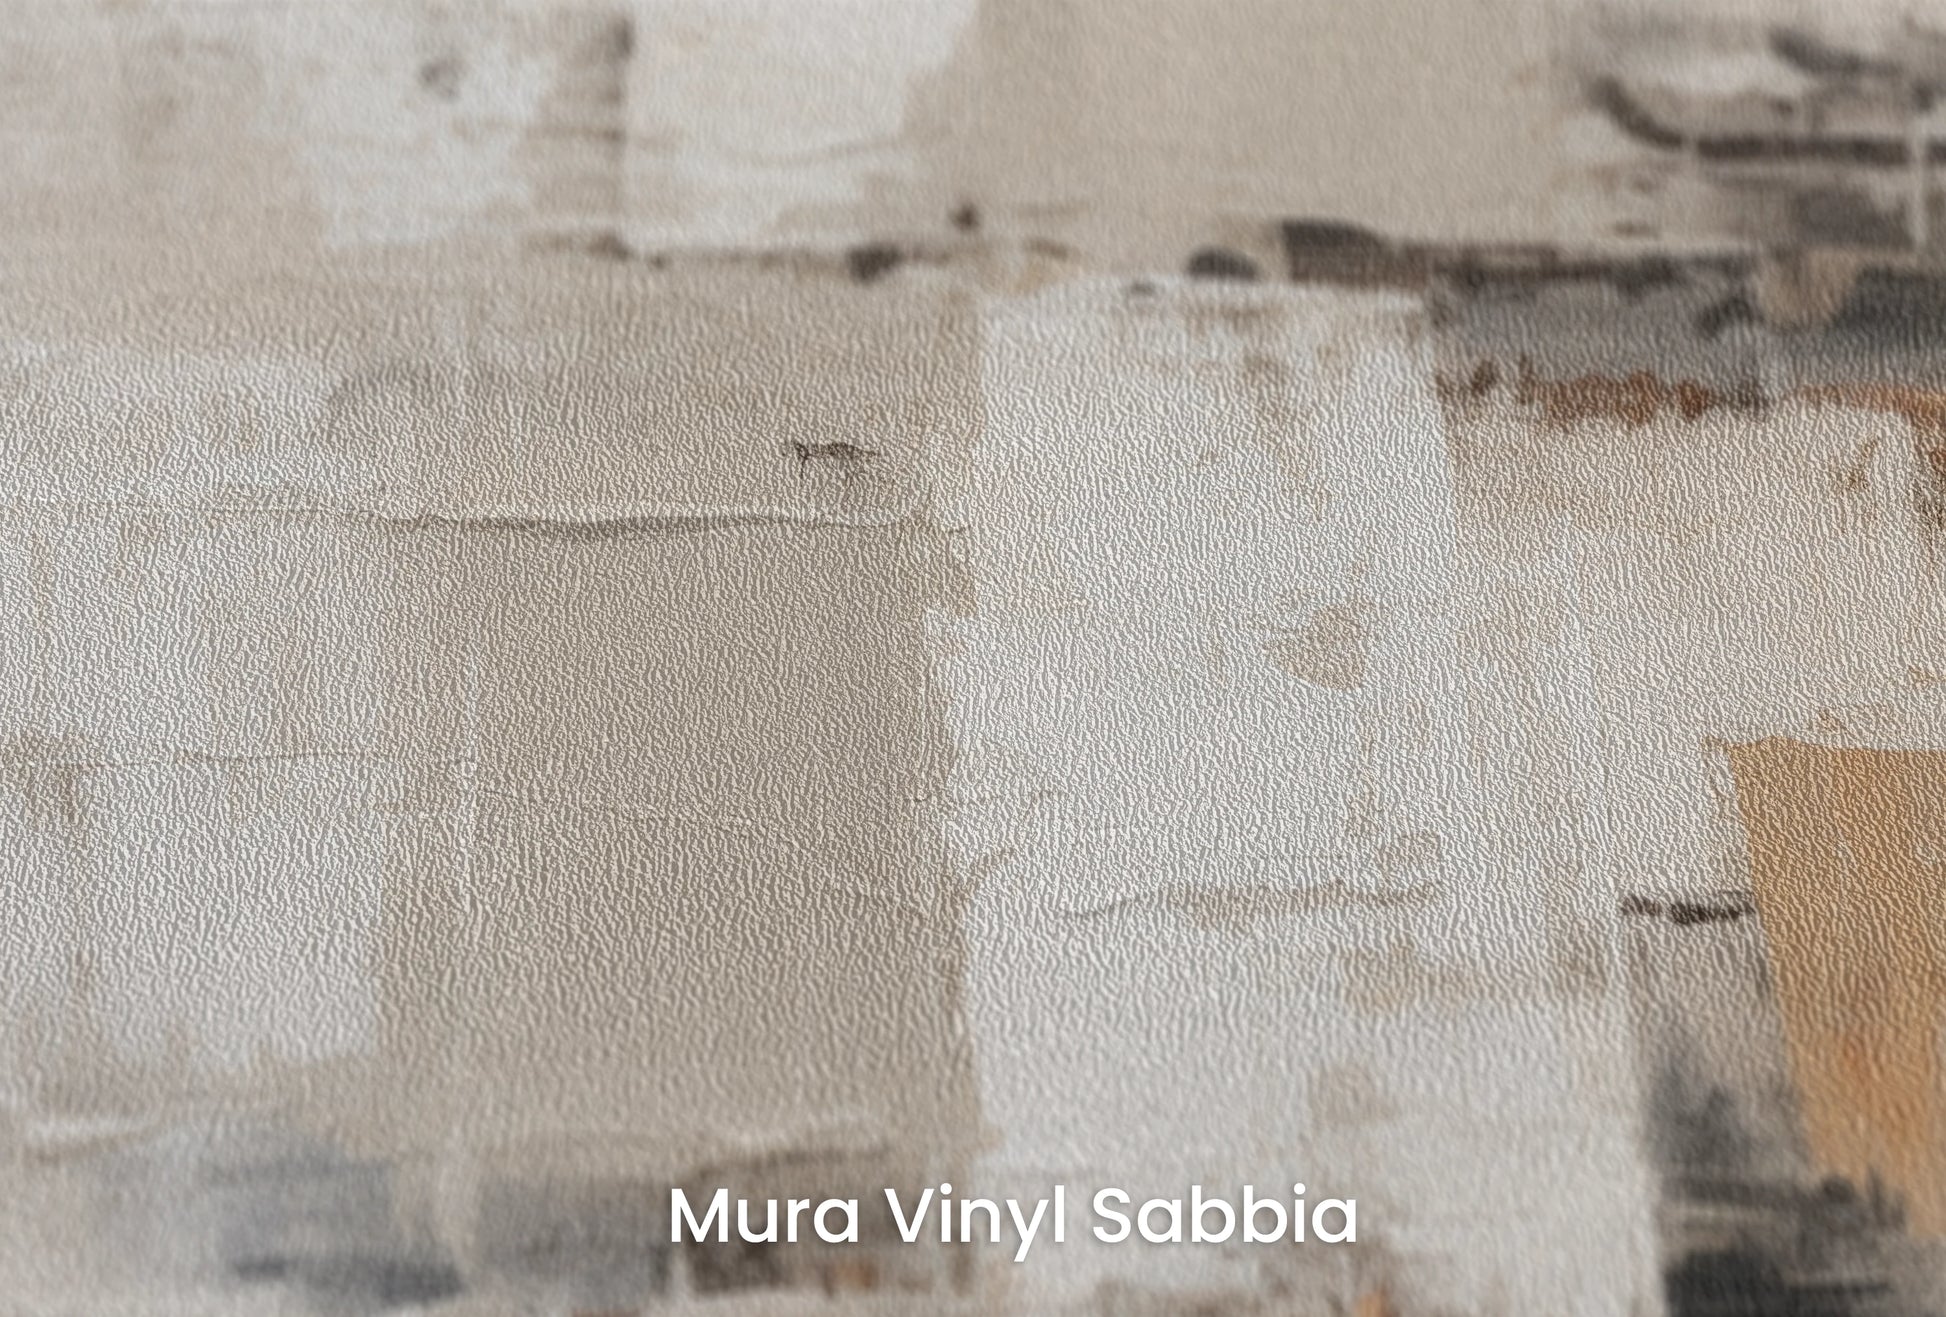 Zbliżenie na artystyczną fototapetę o nazwie Abstract Impressions na podłożu Mura Vinyl Sabbia struktura grubego ziarna piasku.